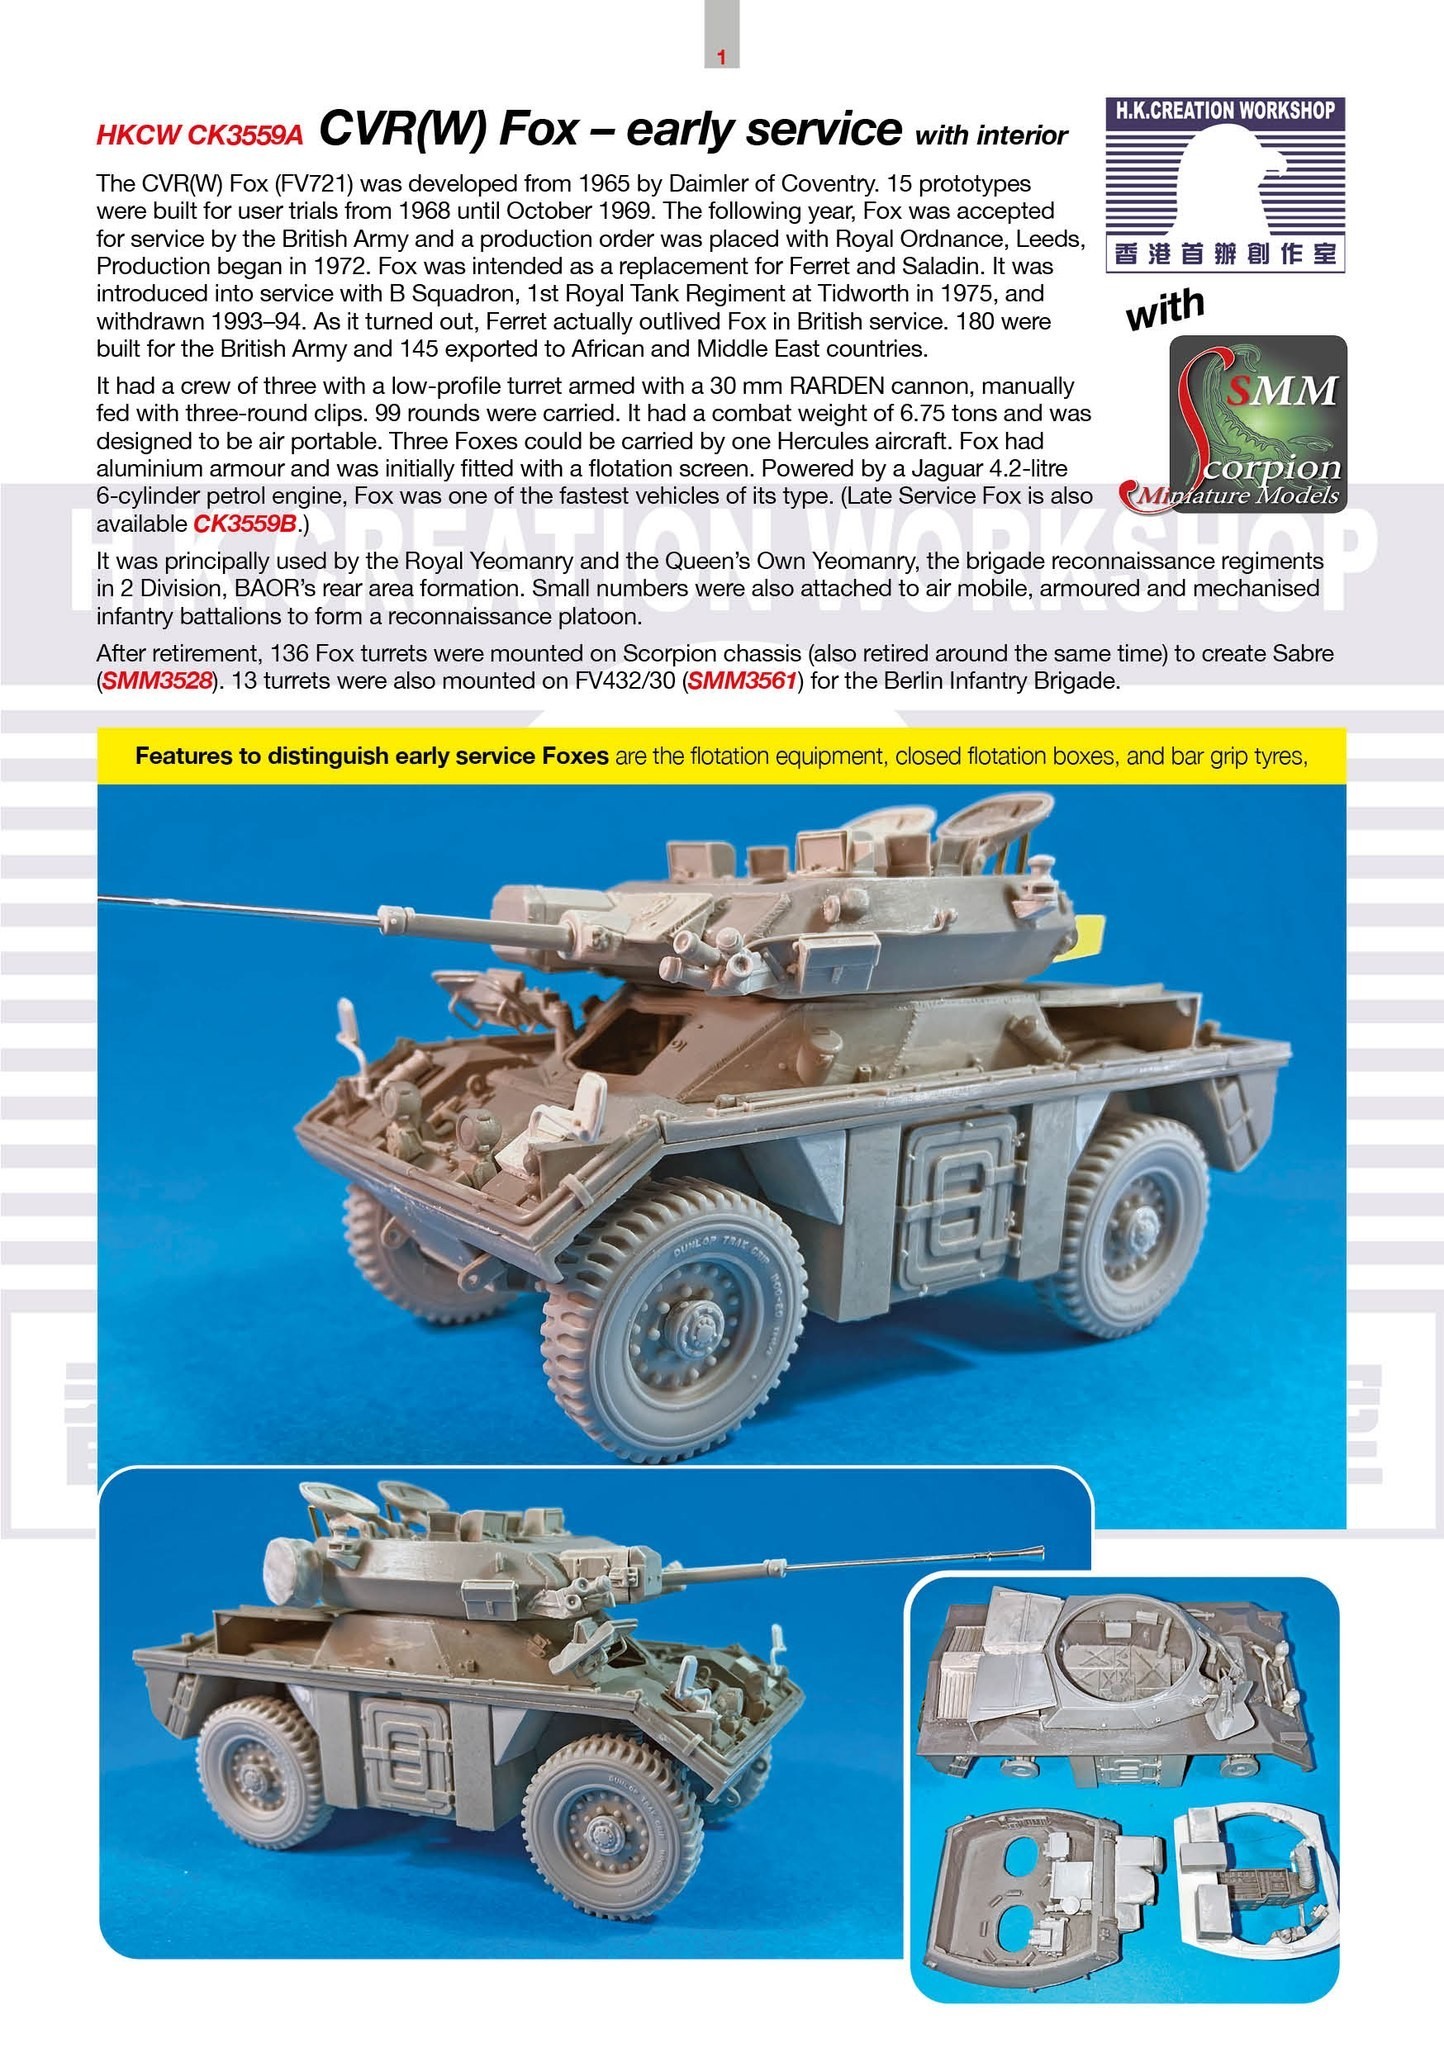 Scorpion Miniature Models New 1/35 HKCW CVR(w) Fox İnterior